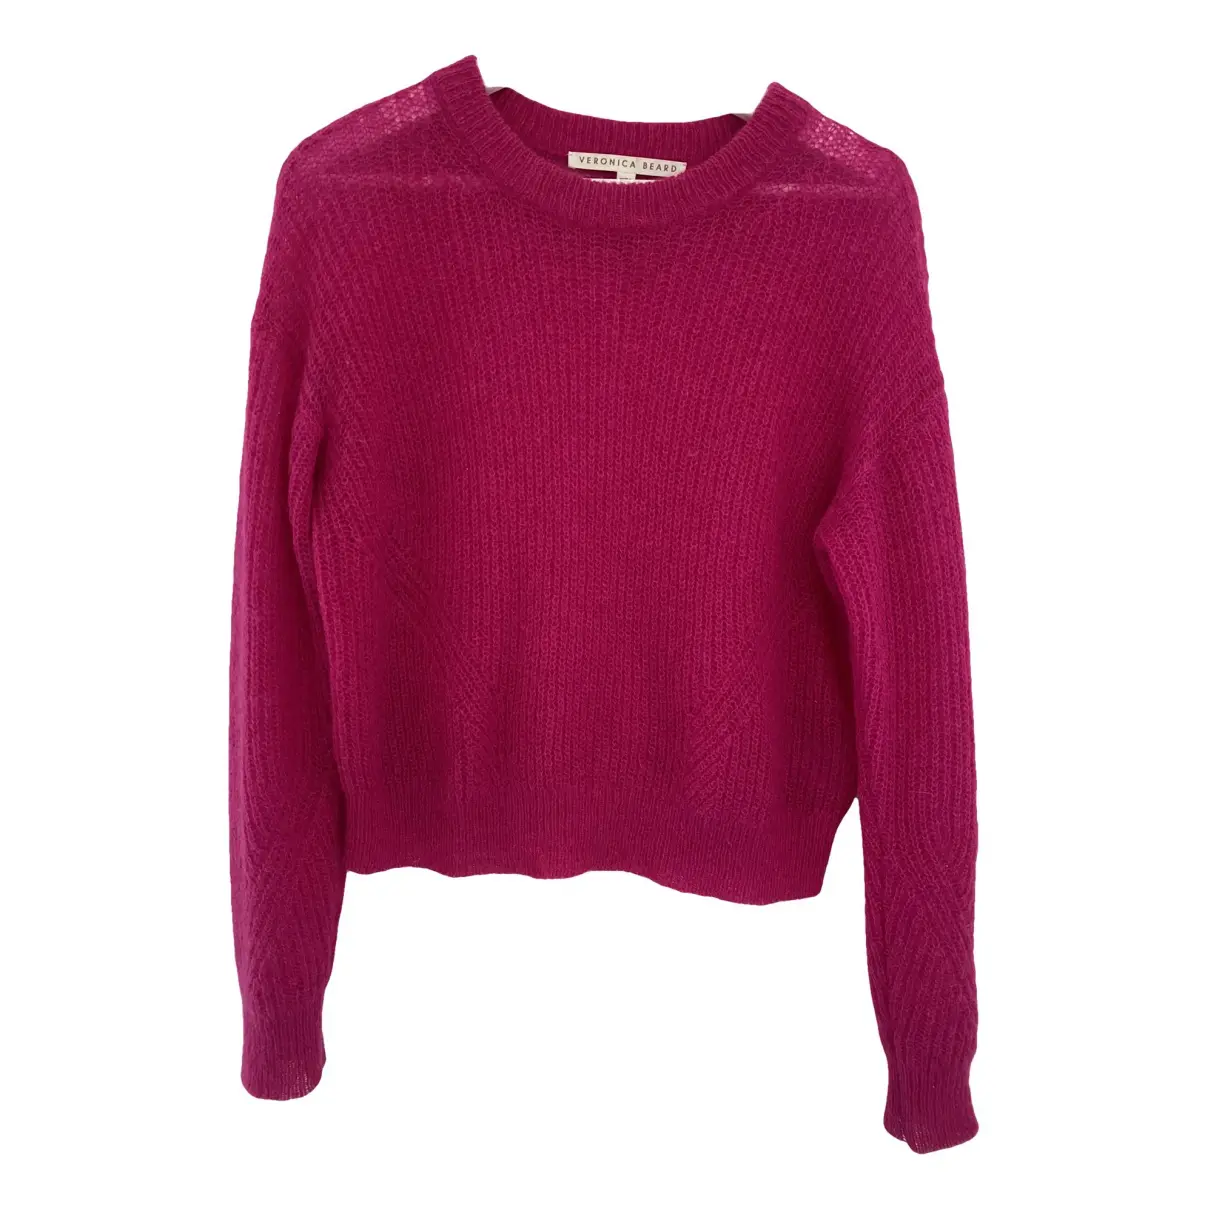 Wool sweatshirt Veronica Beard Pink size XS International in Wool